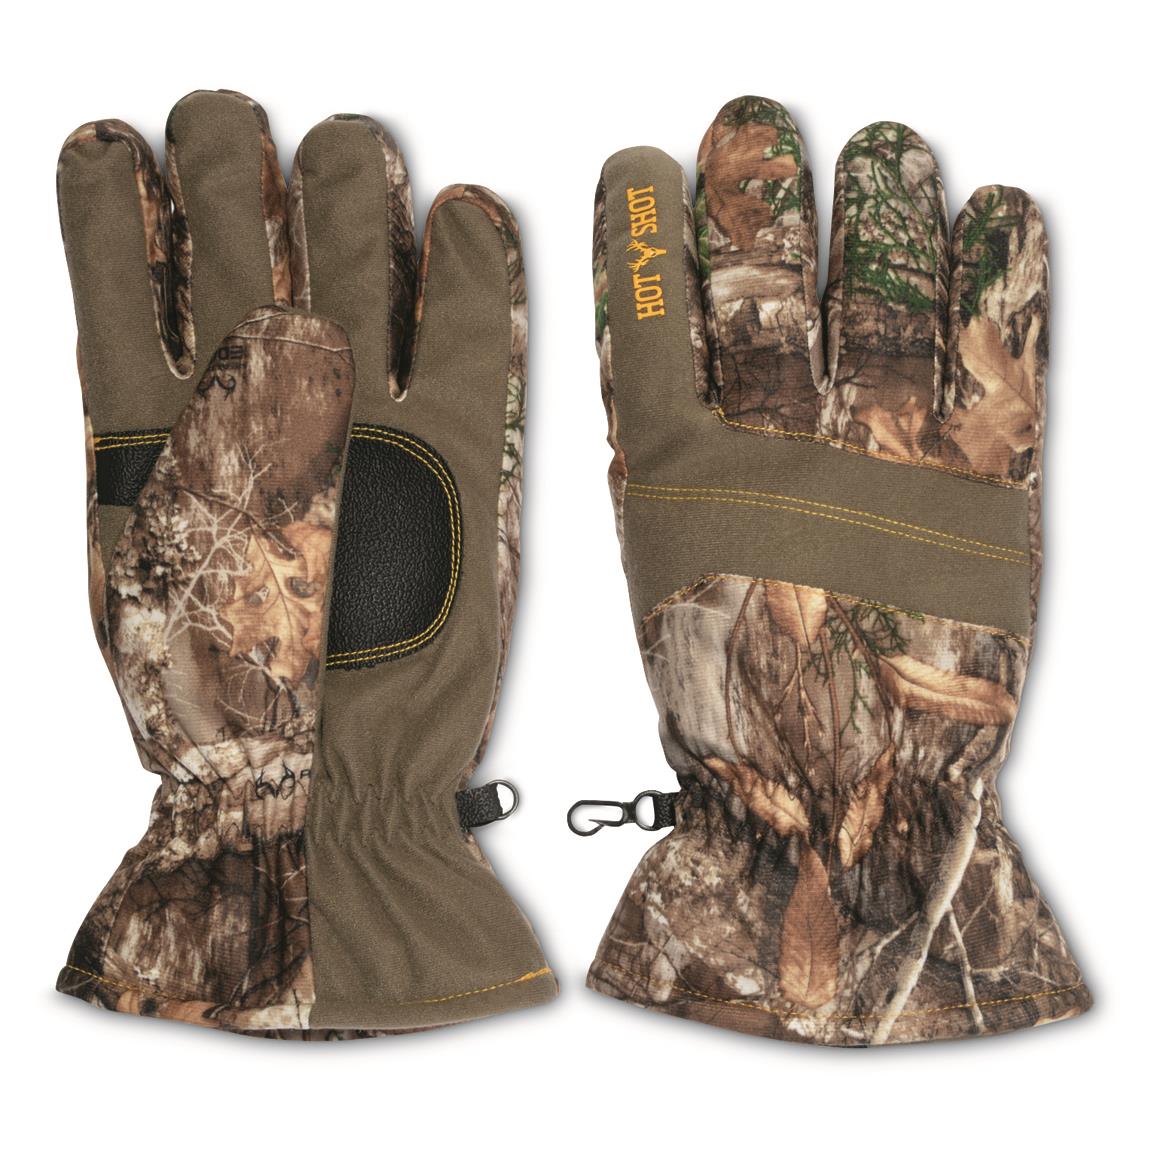 ArcticShield Heat Echo Shooter's Gloves, Realtree Edge - 711948, Gloves ...